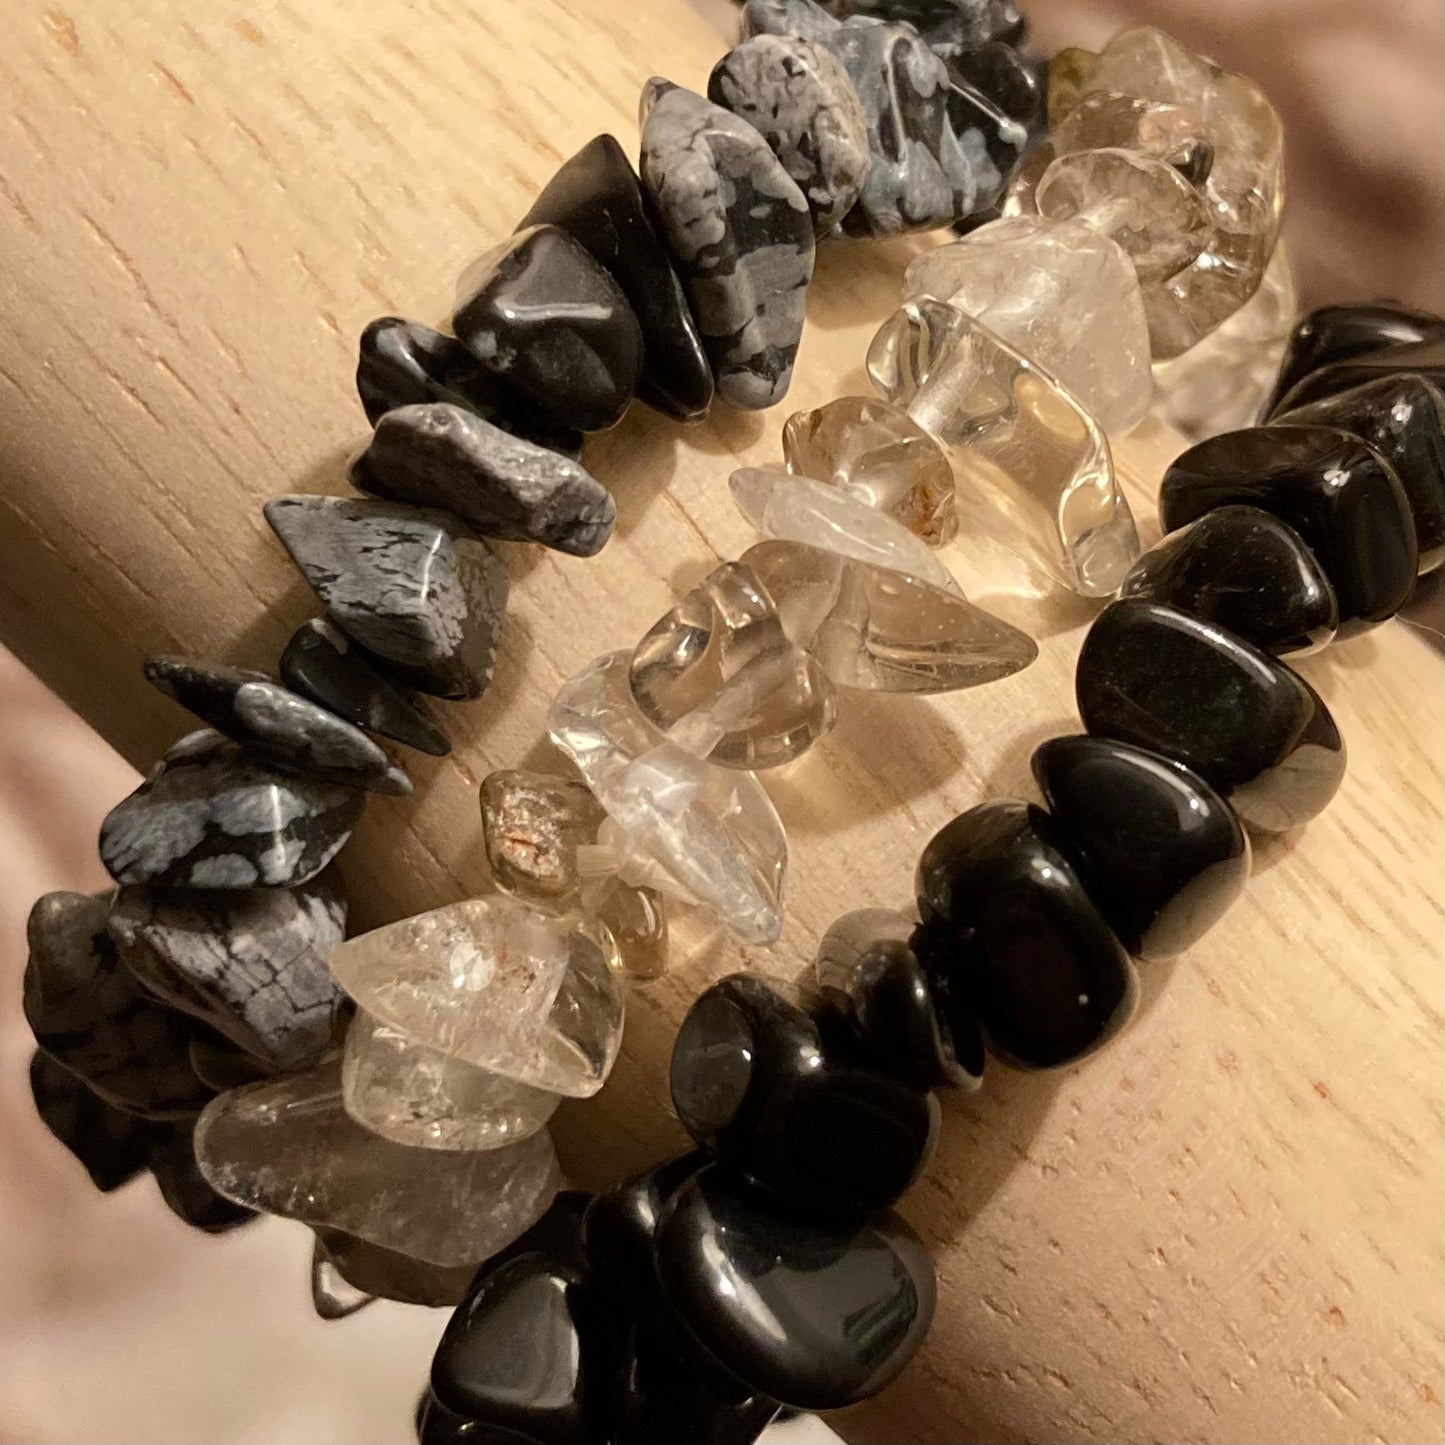 Black Obsidian Crystal Chip Bracelet